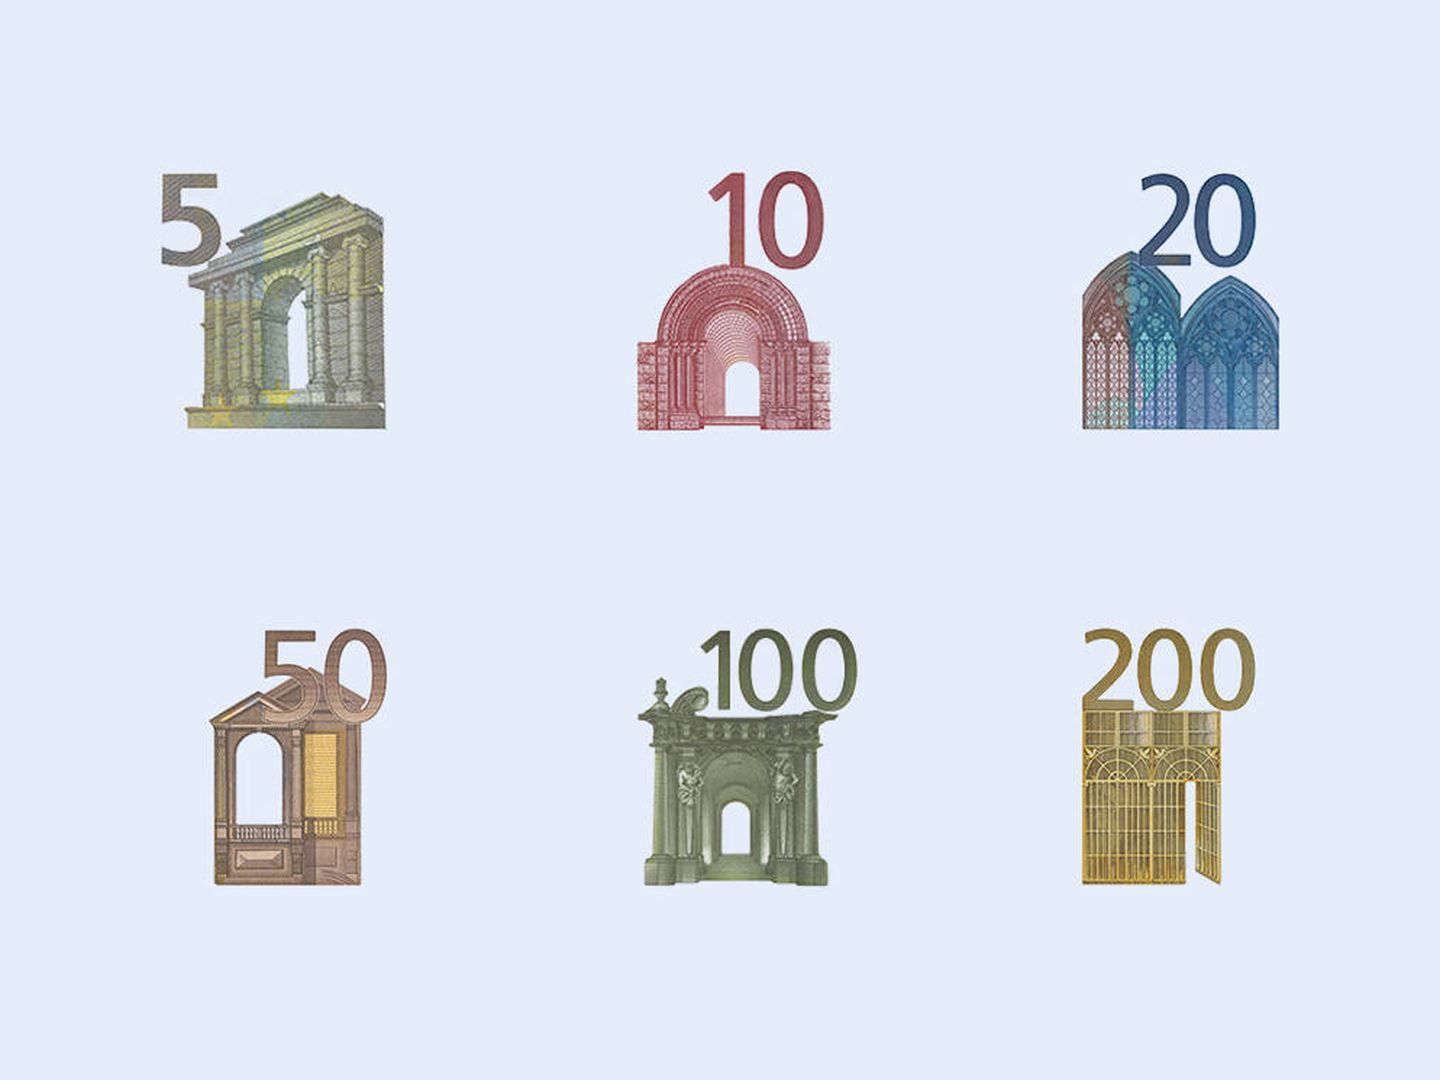 Todos los monumentos ficticios de los billetes de euro (Banco Central Europeo)